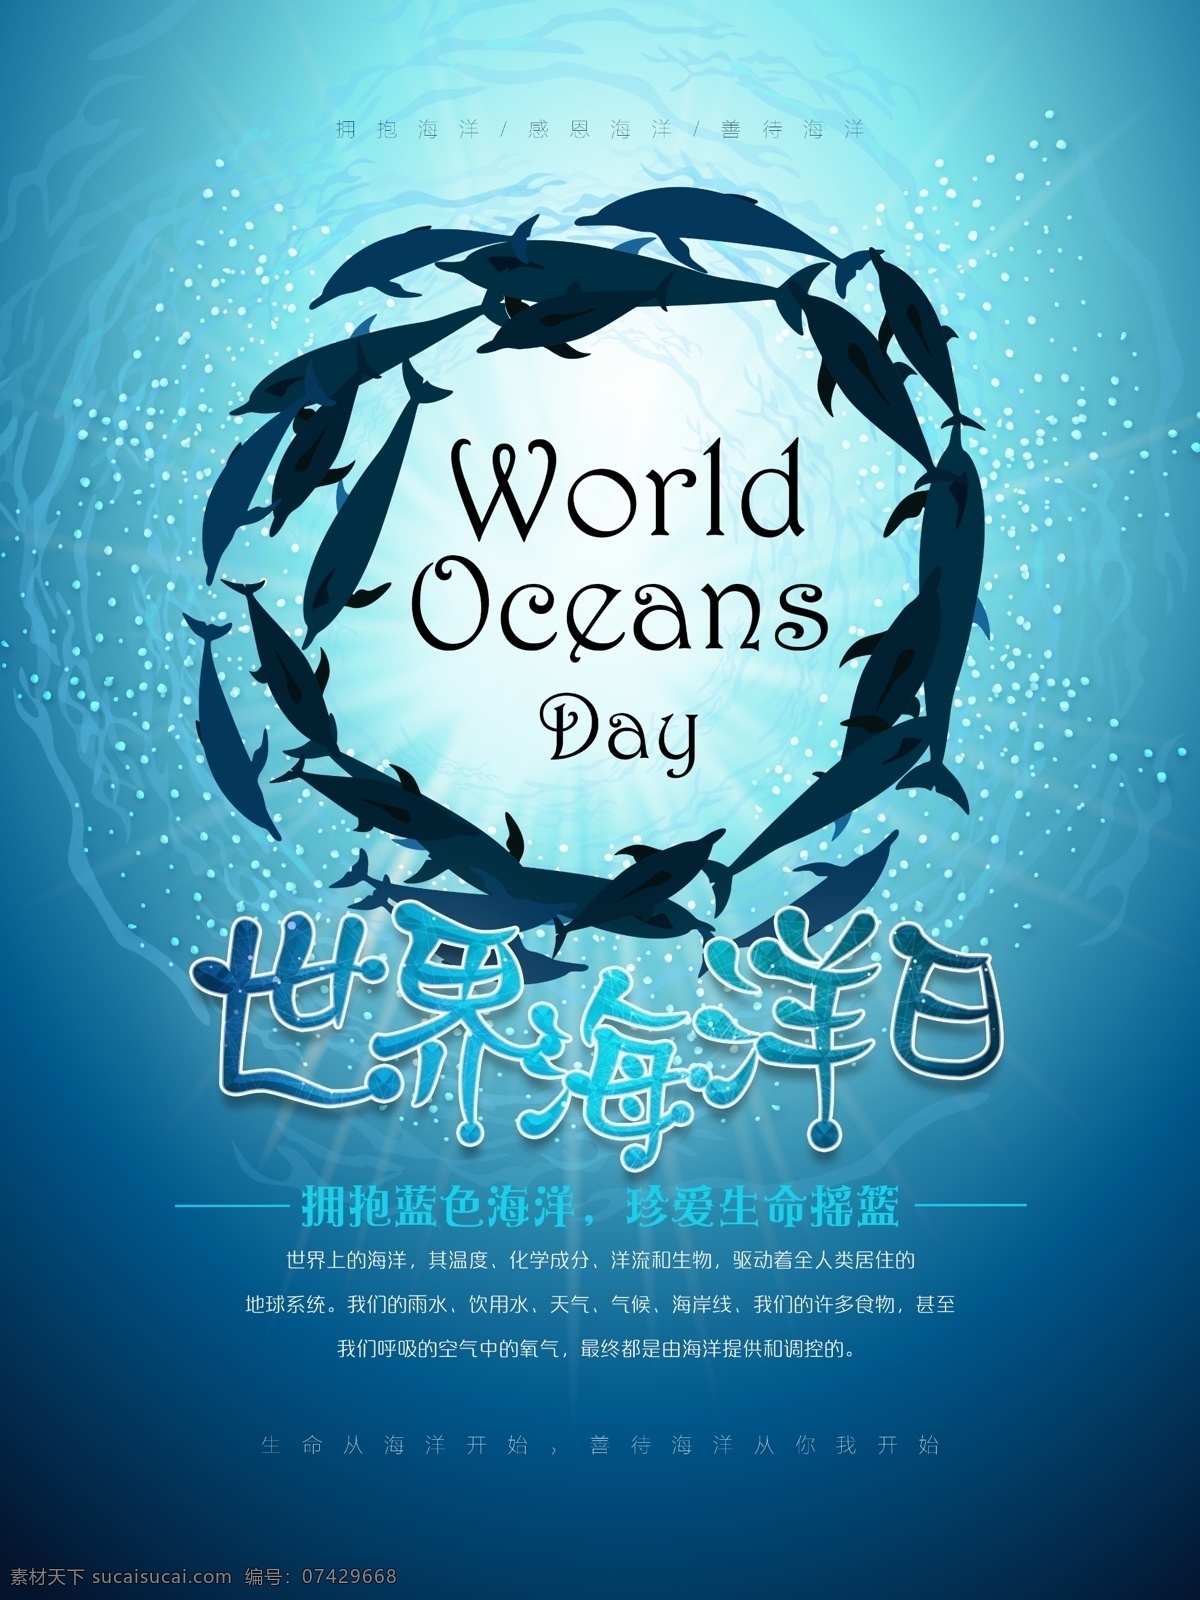 6月8日 世界海洋日 国际海洋日 海洋 保护海洋 守护海洋 海底 海底动物 海豚 海洋素材 海底世界 海洋背景 公益 公益海报 保护环境